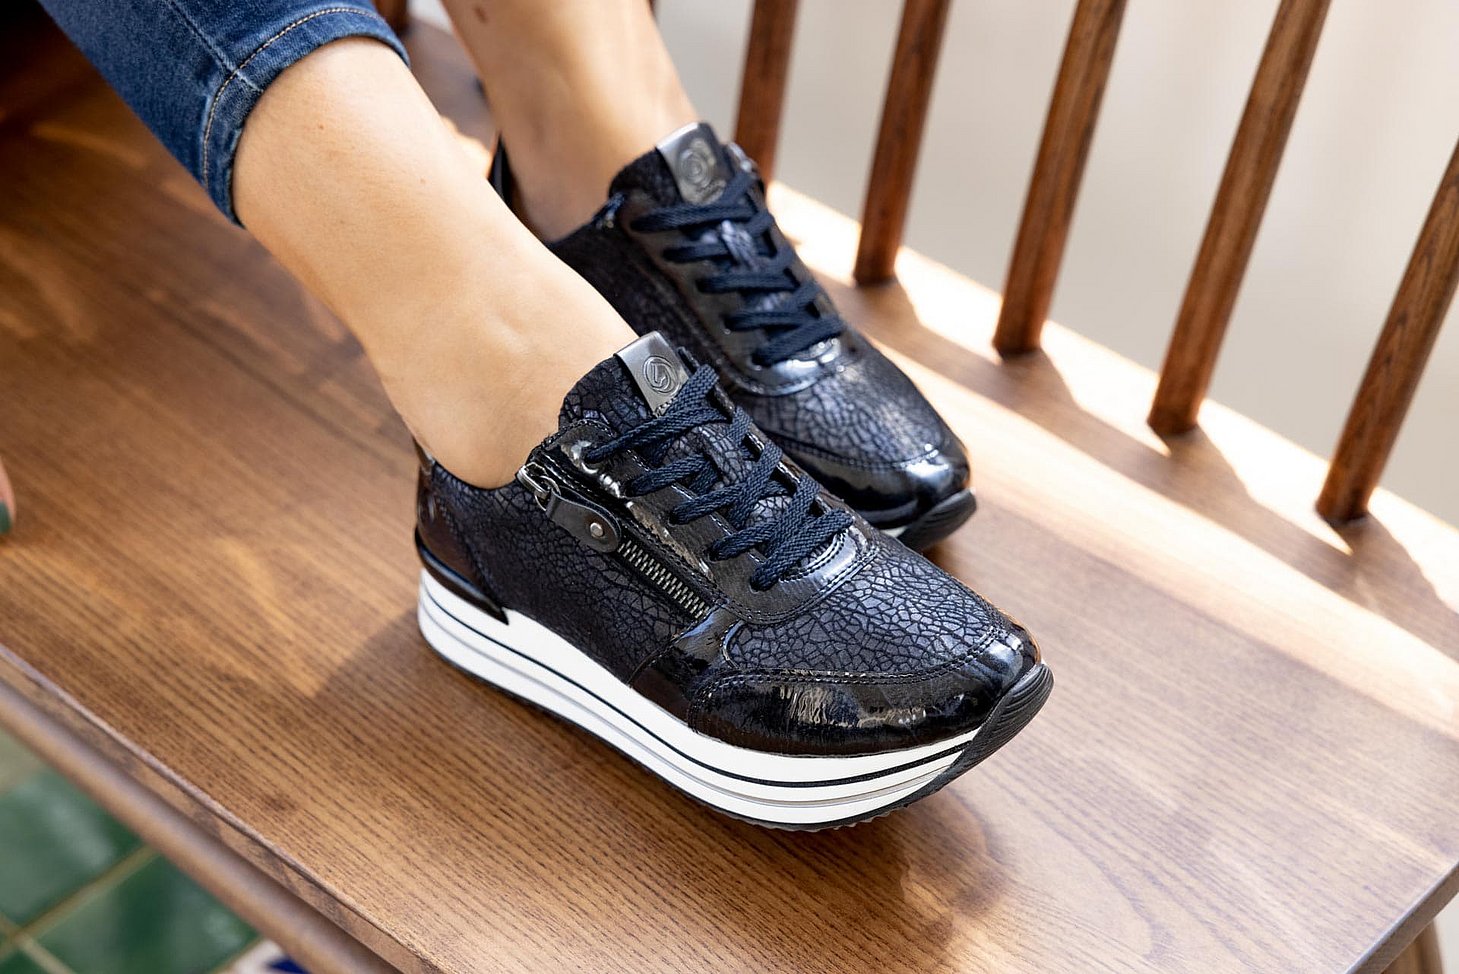 Blaue Sneaker aus Kunstlack und Stretchmaterial mit Reißverschluss und Schnürung und Wechselfußbett. Passend zu den Schuhen trägt die Frau eine enge Jeanshose.